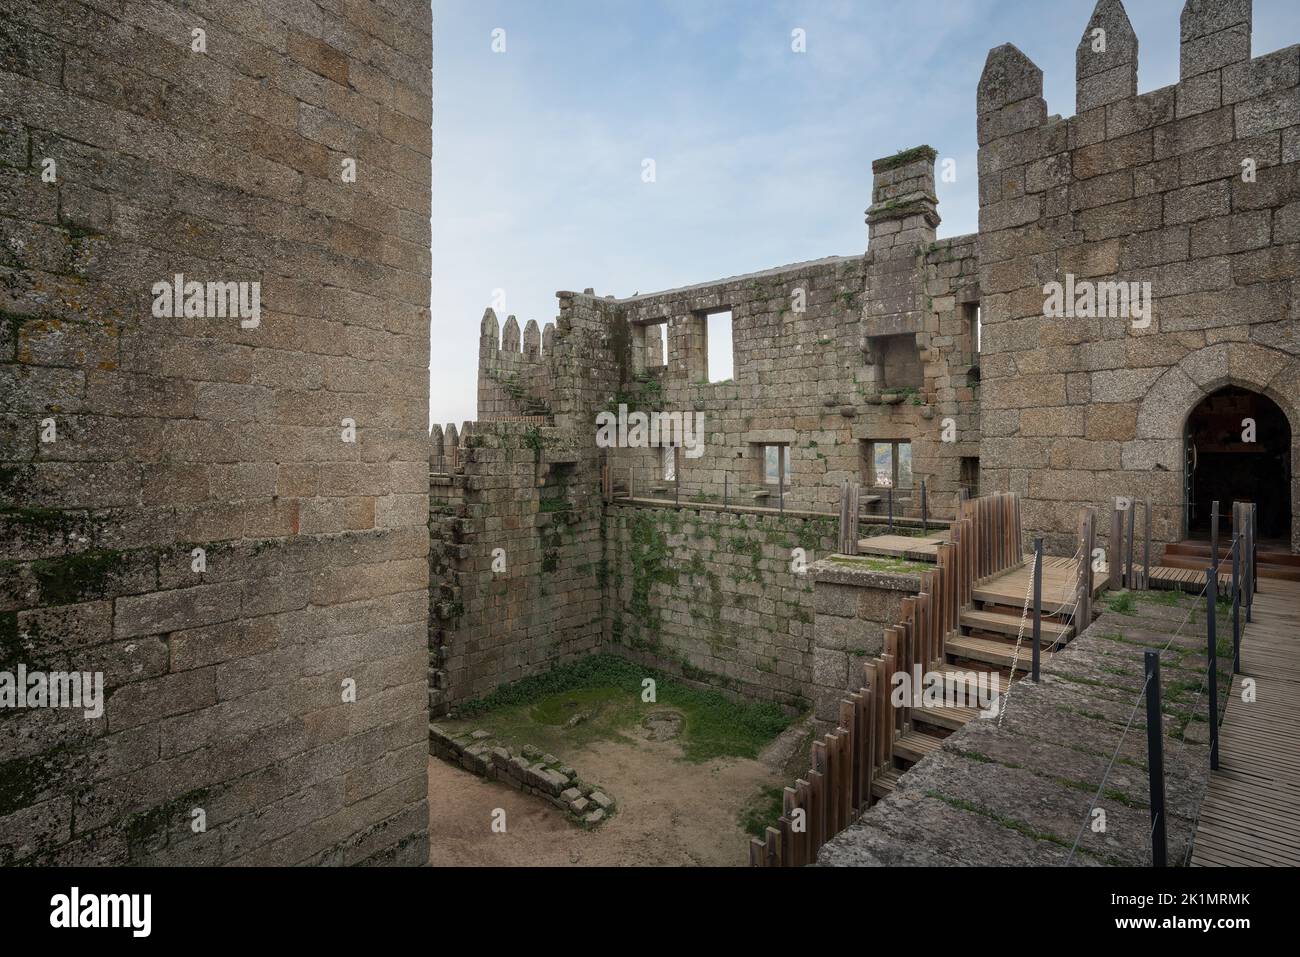 Castillo de Guimaraes barrio interior - Guimaraes, Portugal Foto de stock